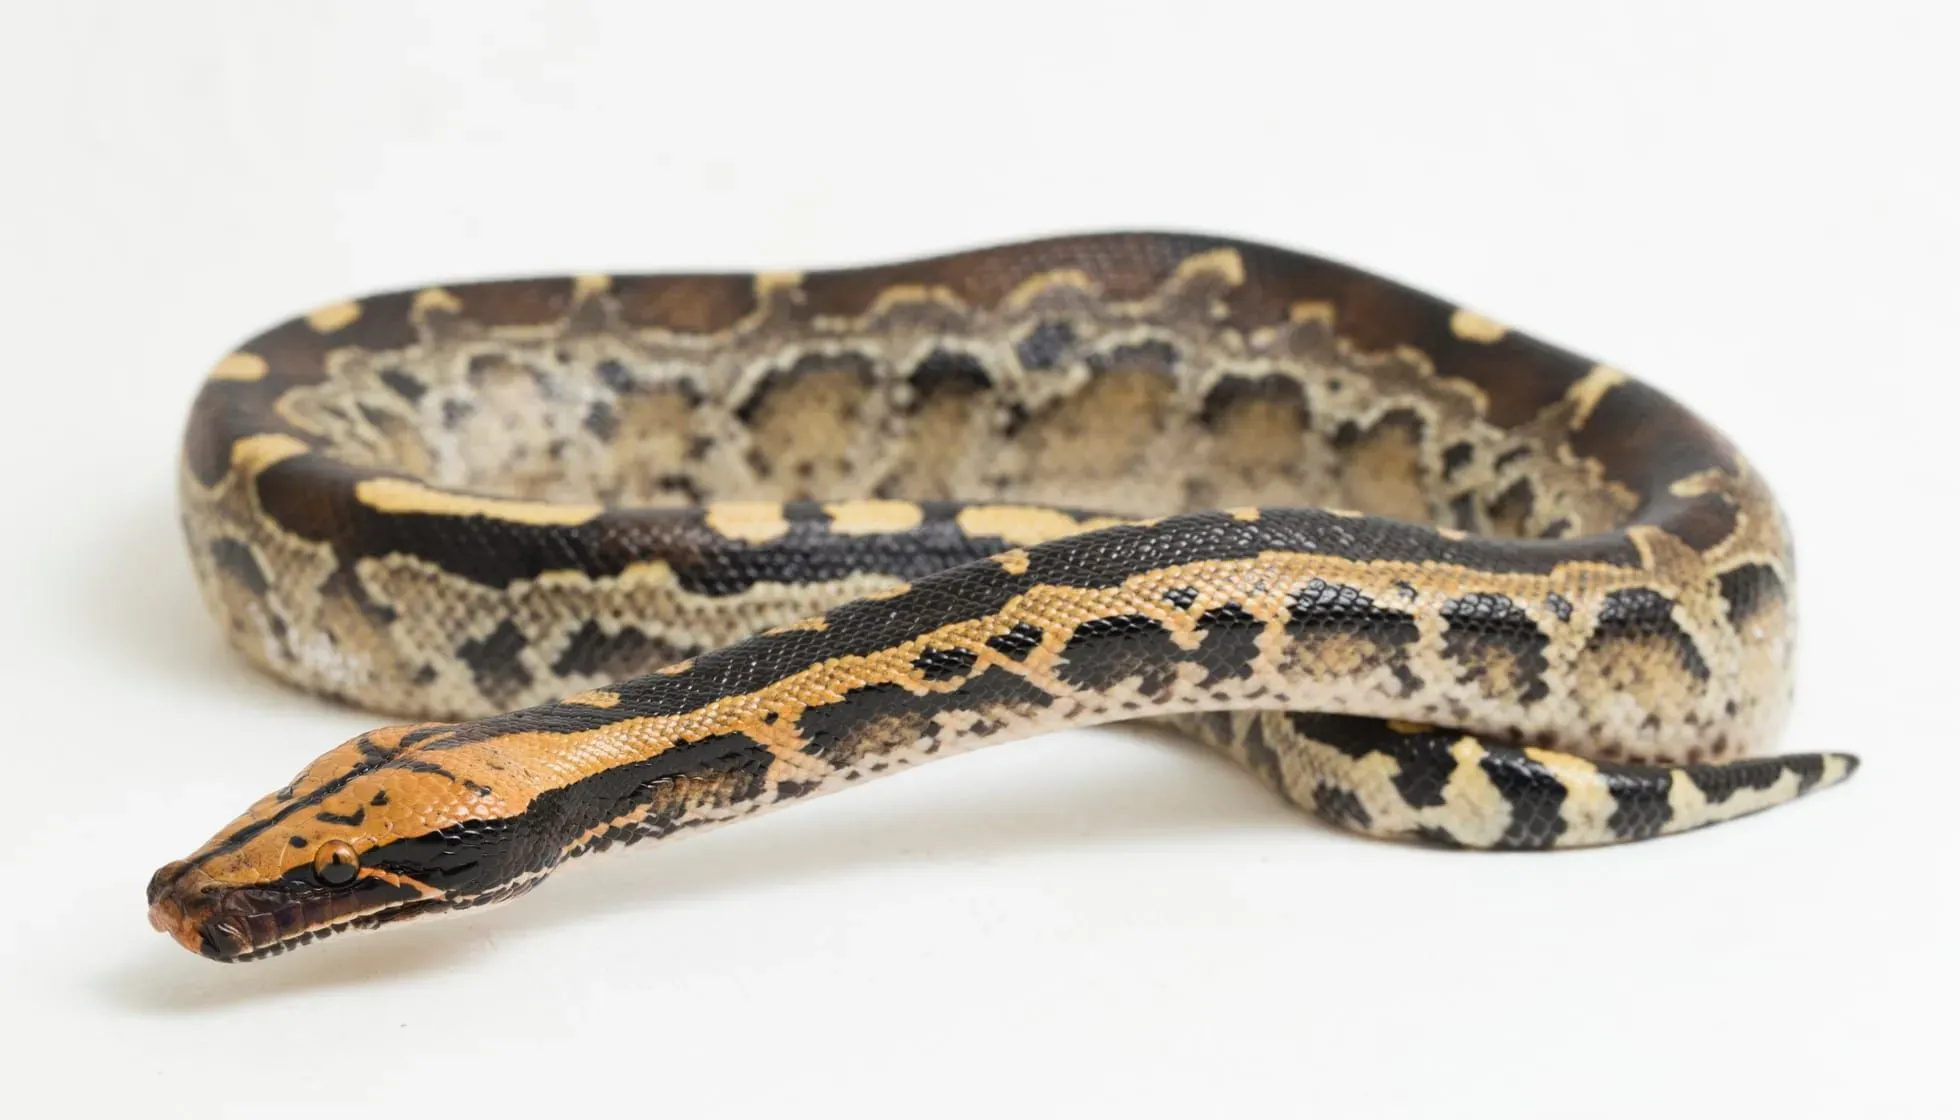 Borneo Python